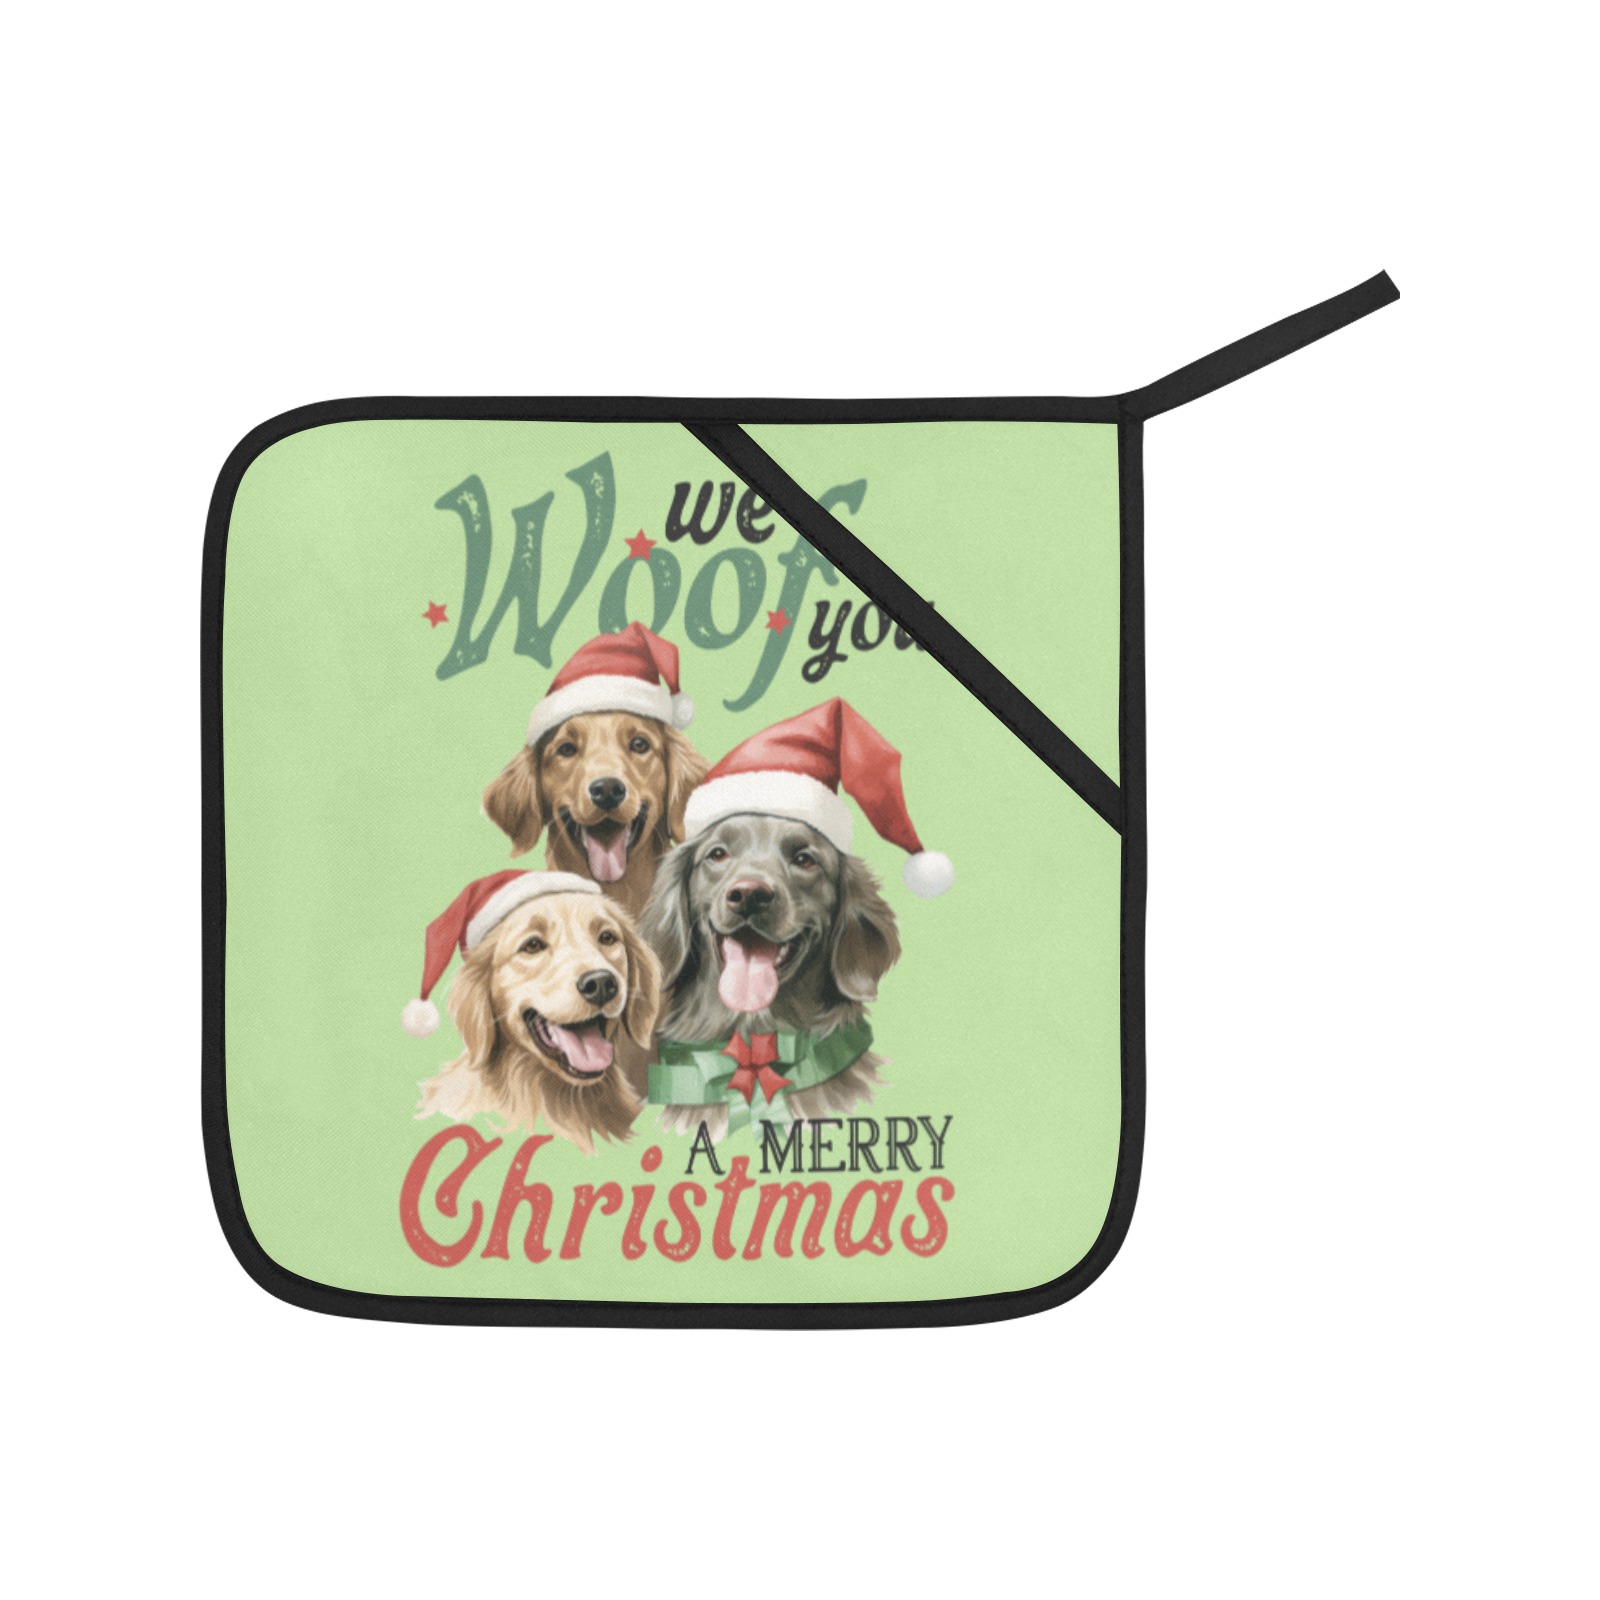 We Woof You A Merry Christmas (G) Oven Mitt & Pot Holder